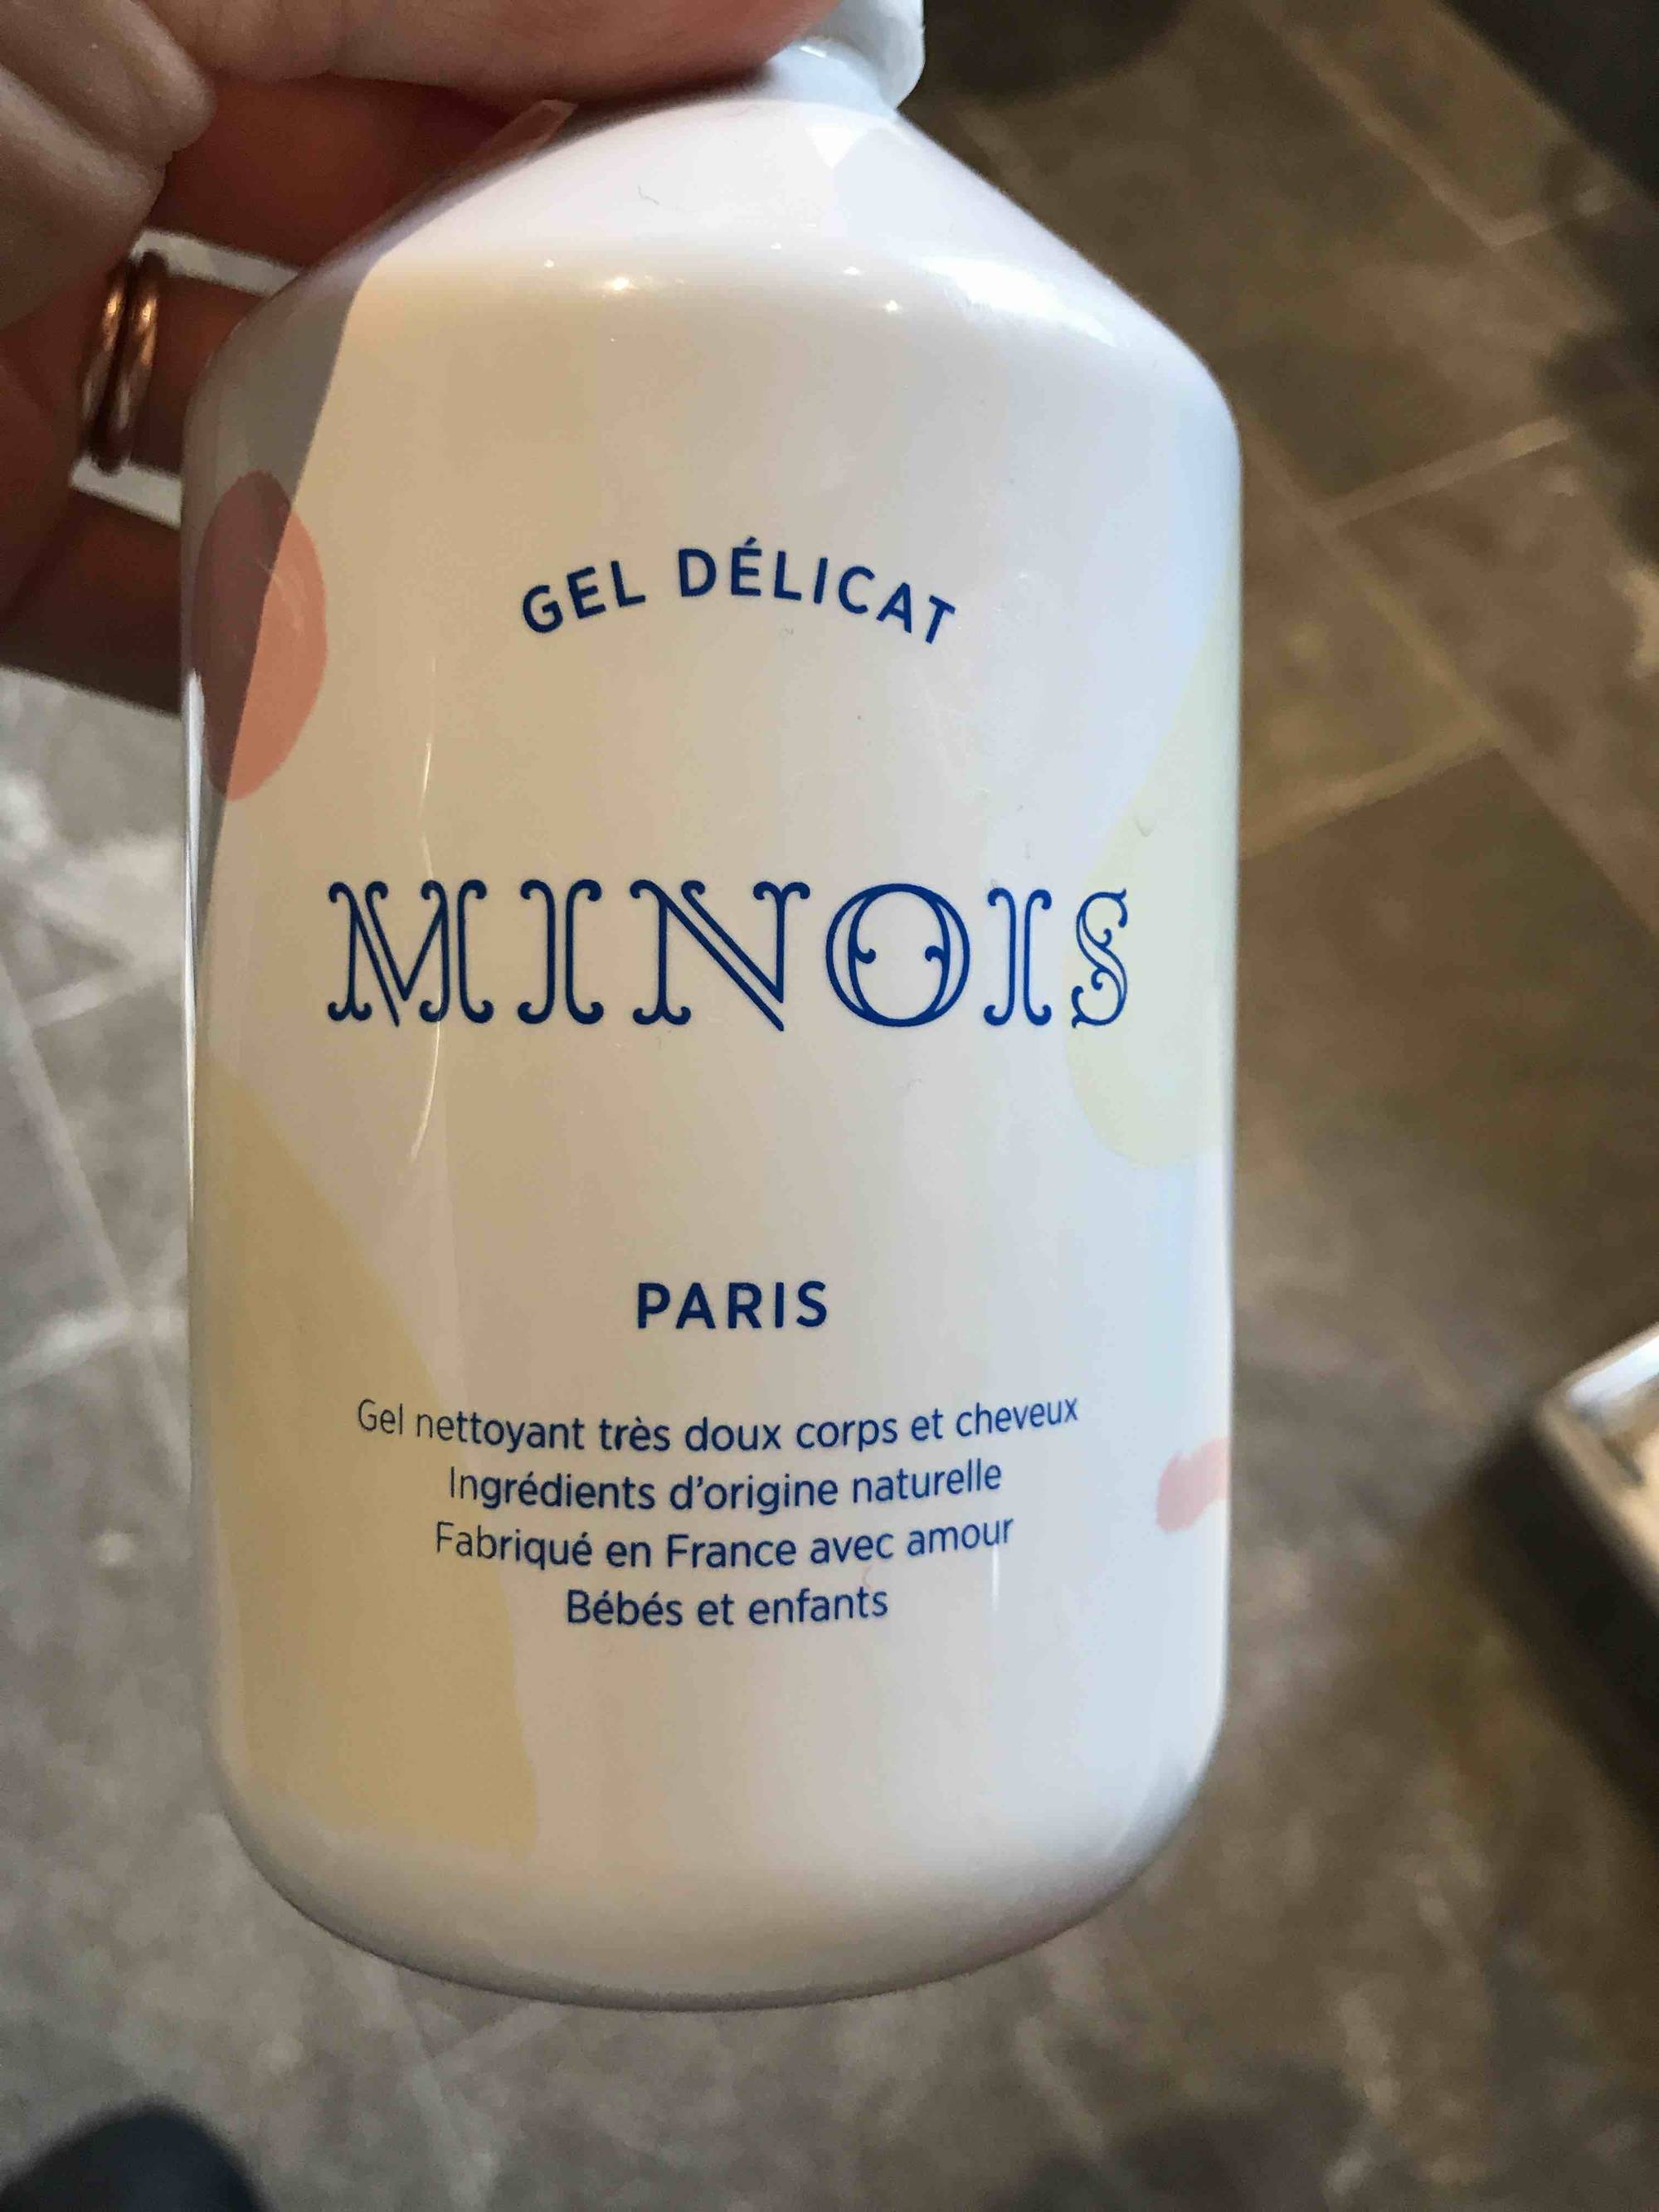 MINOIS PARIS - Gel délicat - Nettoyant très doux corps et cheveux